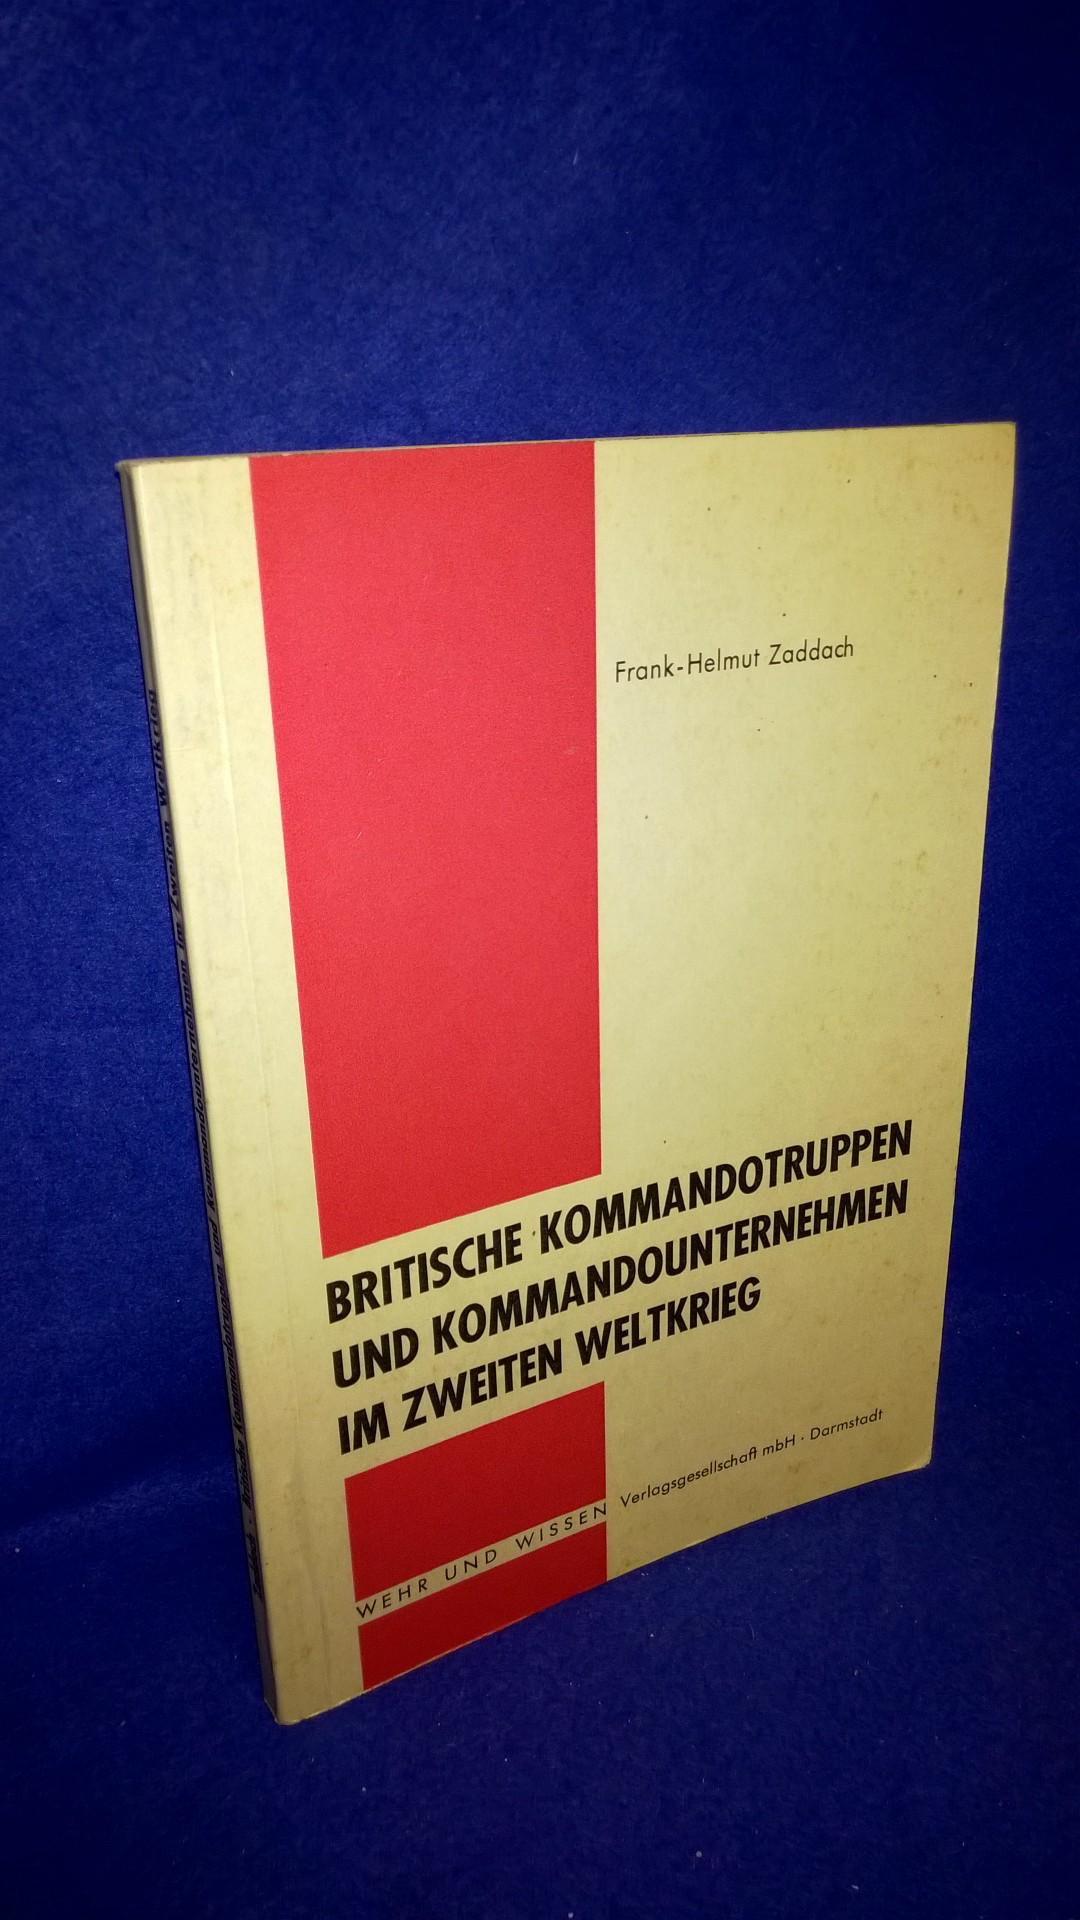 Britische Kommandotruppen und Kommandounternehmen im Zweiten Weltkrieg.